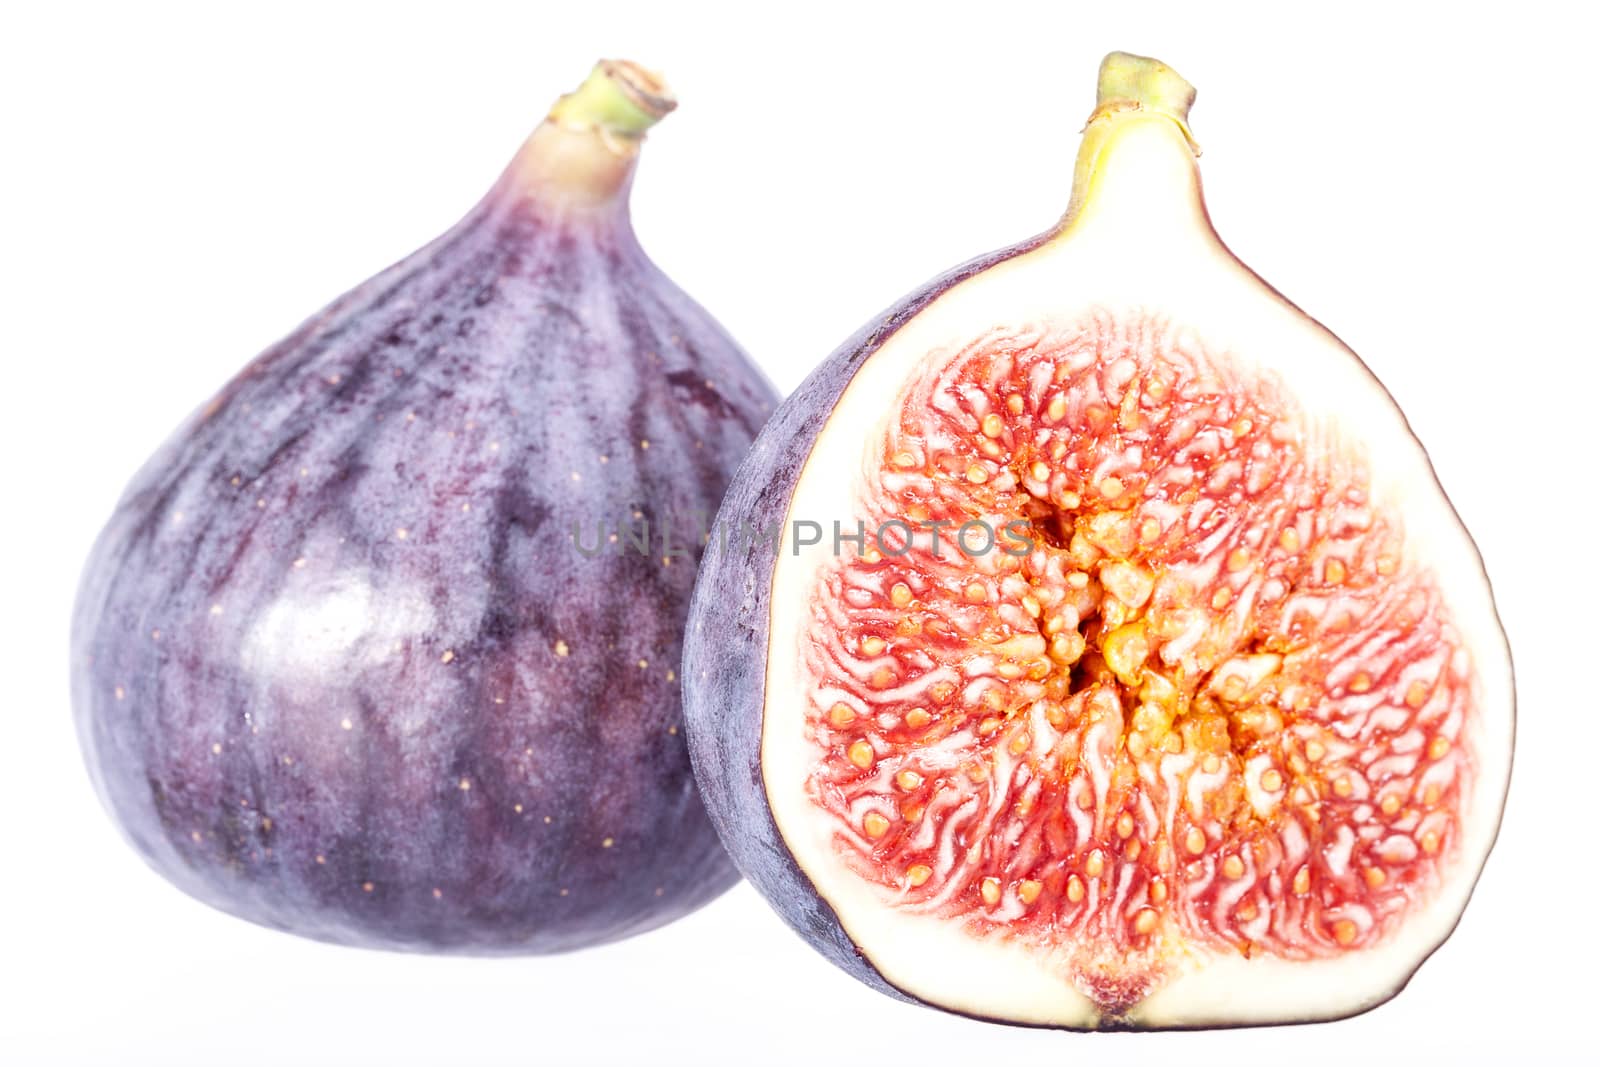 Fruits of fresh fig isolated on white background.